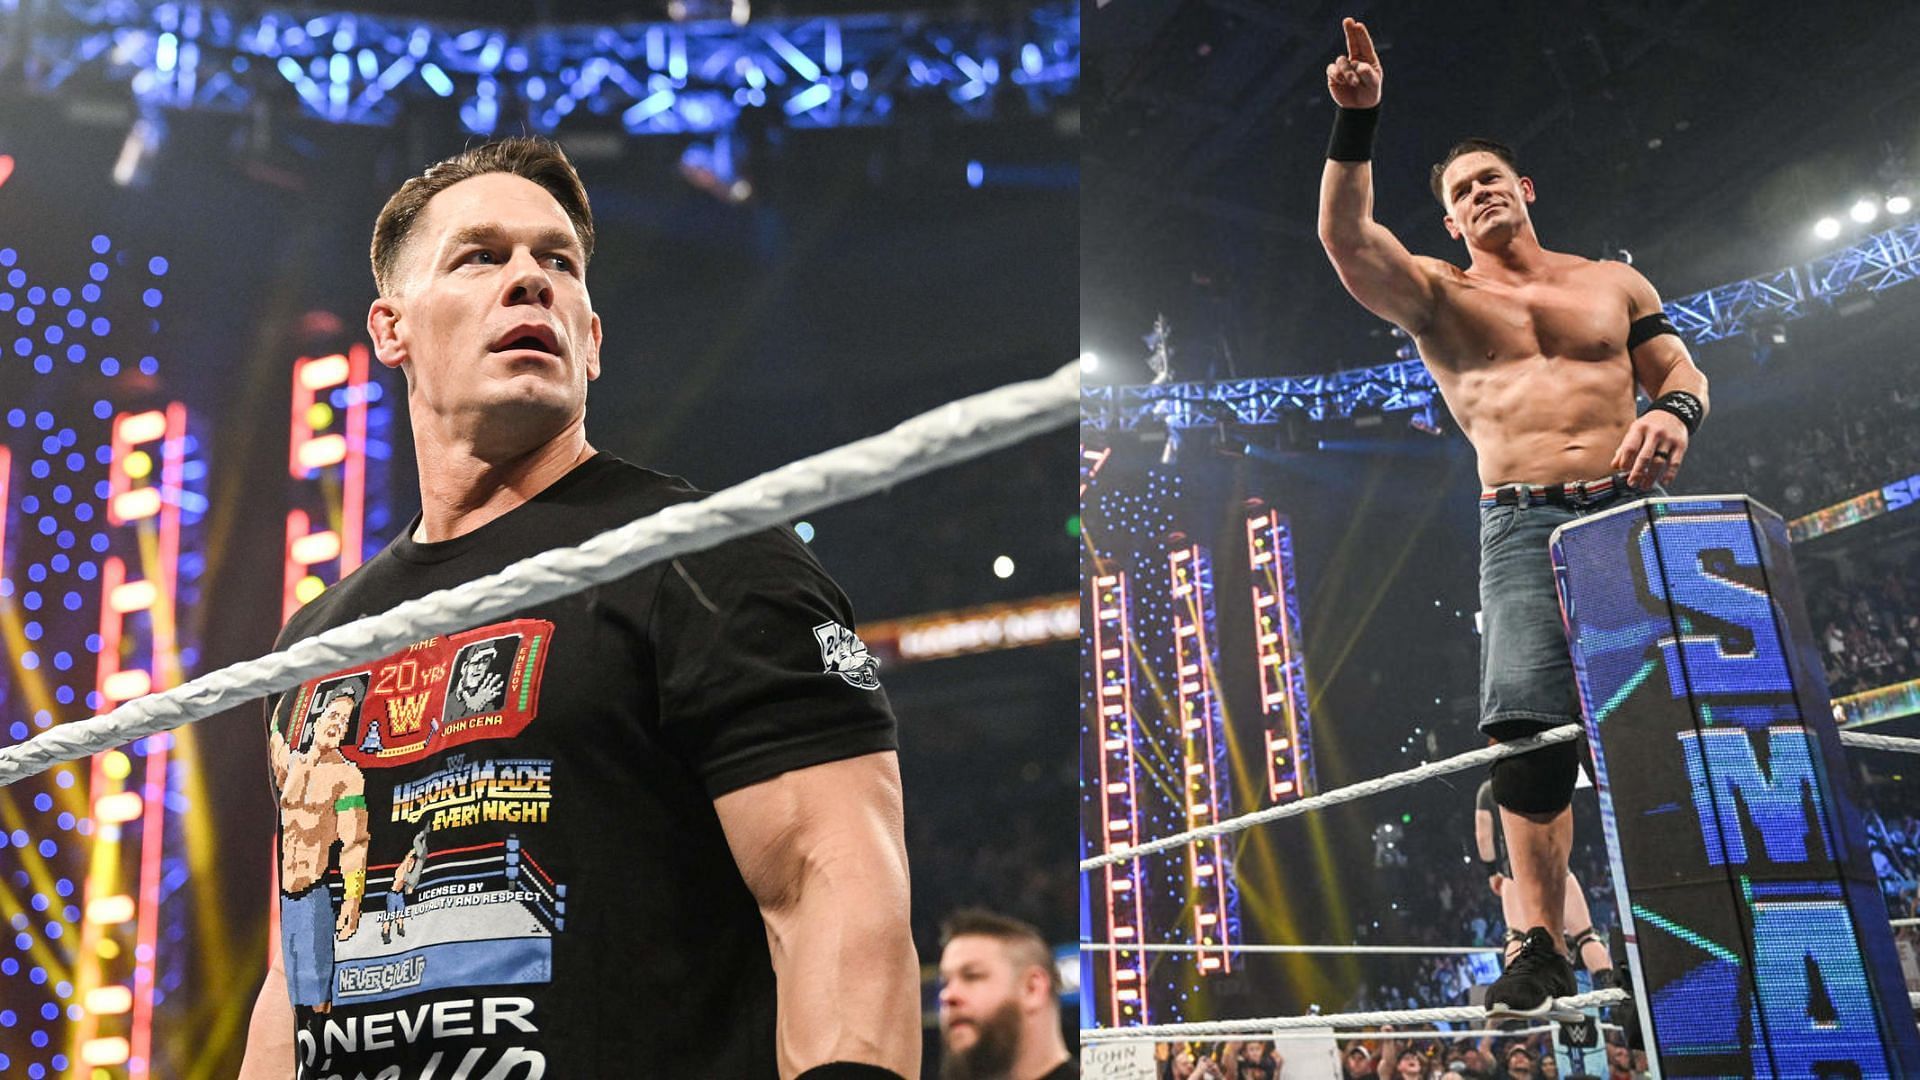 John Cena wrestled one match in 2022.